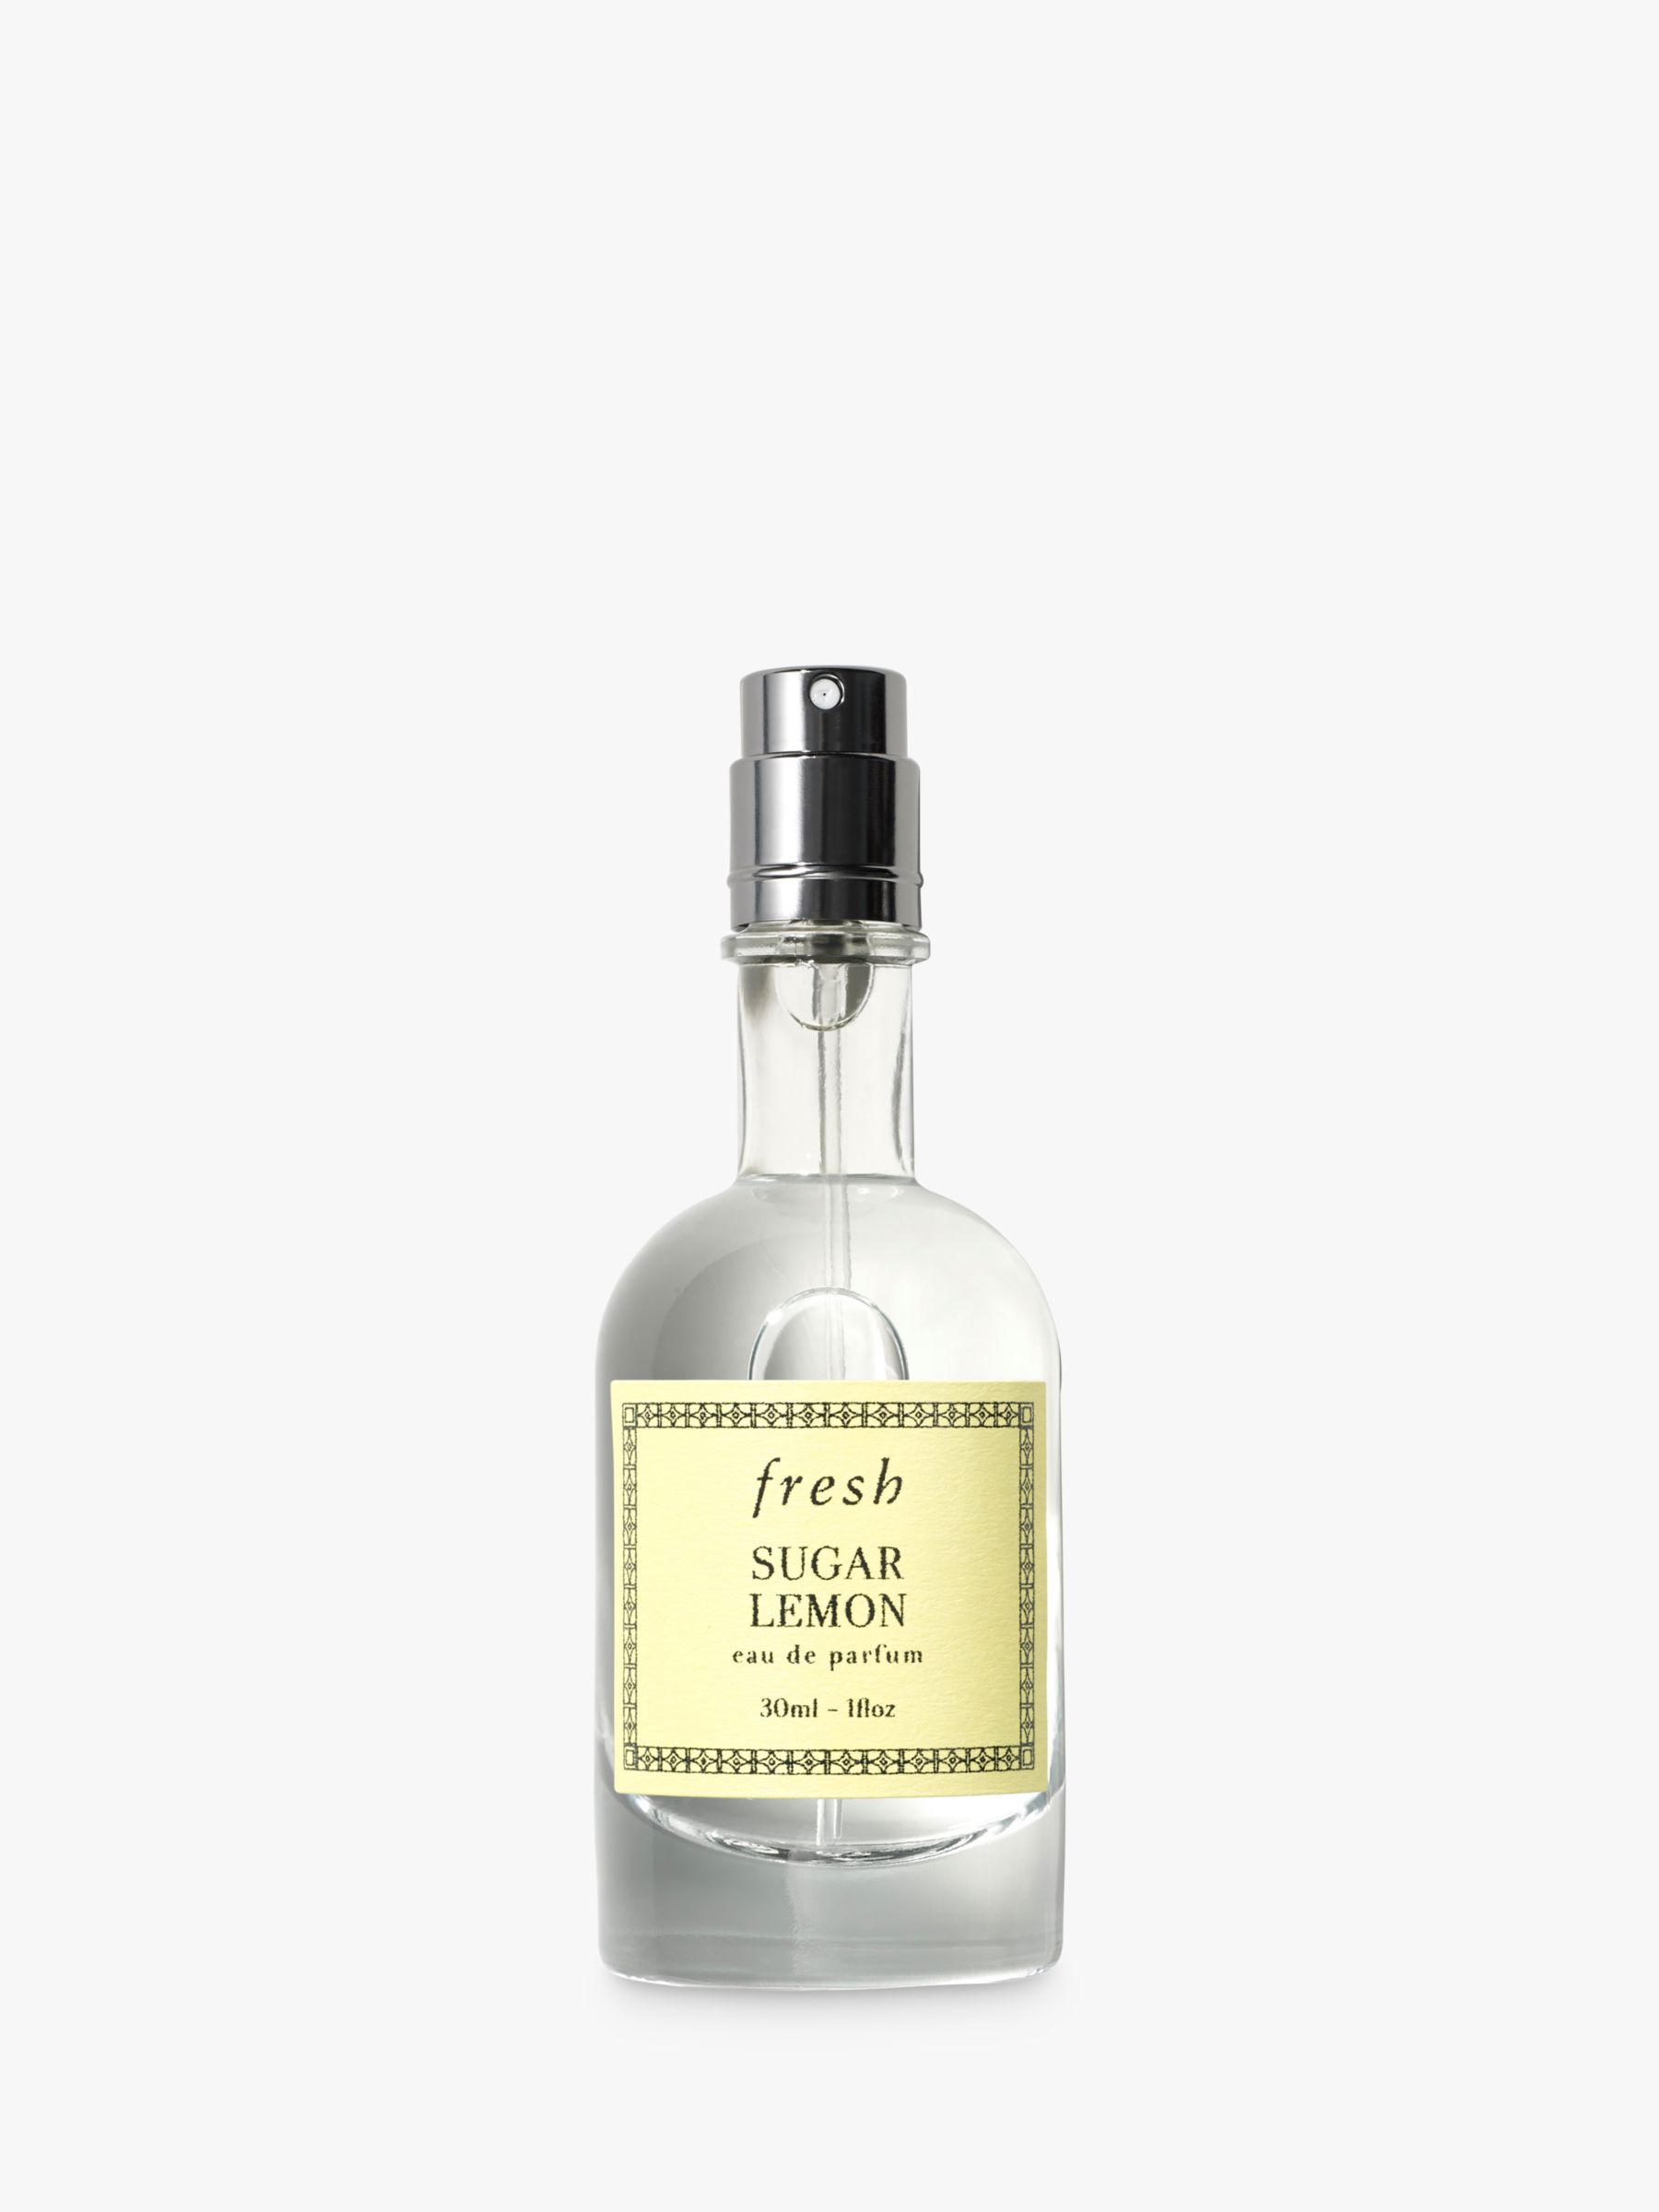 Sugar Lemon Eau de Parfum, 30ml at John & Partners